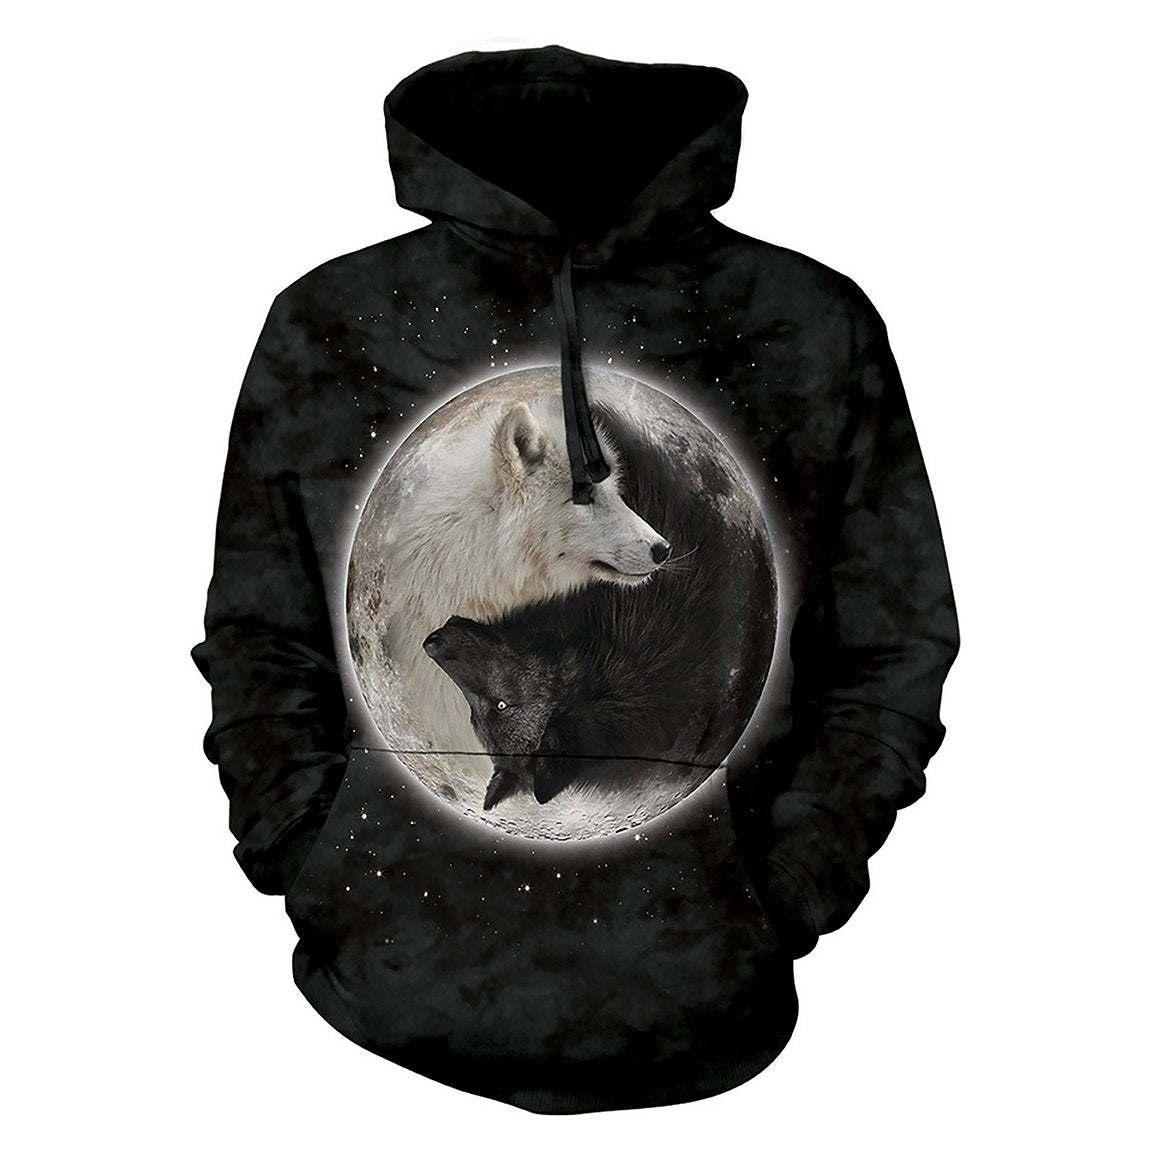 Yin Yang Wolves - Adult Unisex Hoodie Sweatshirt